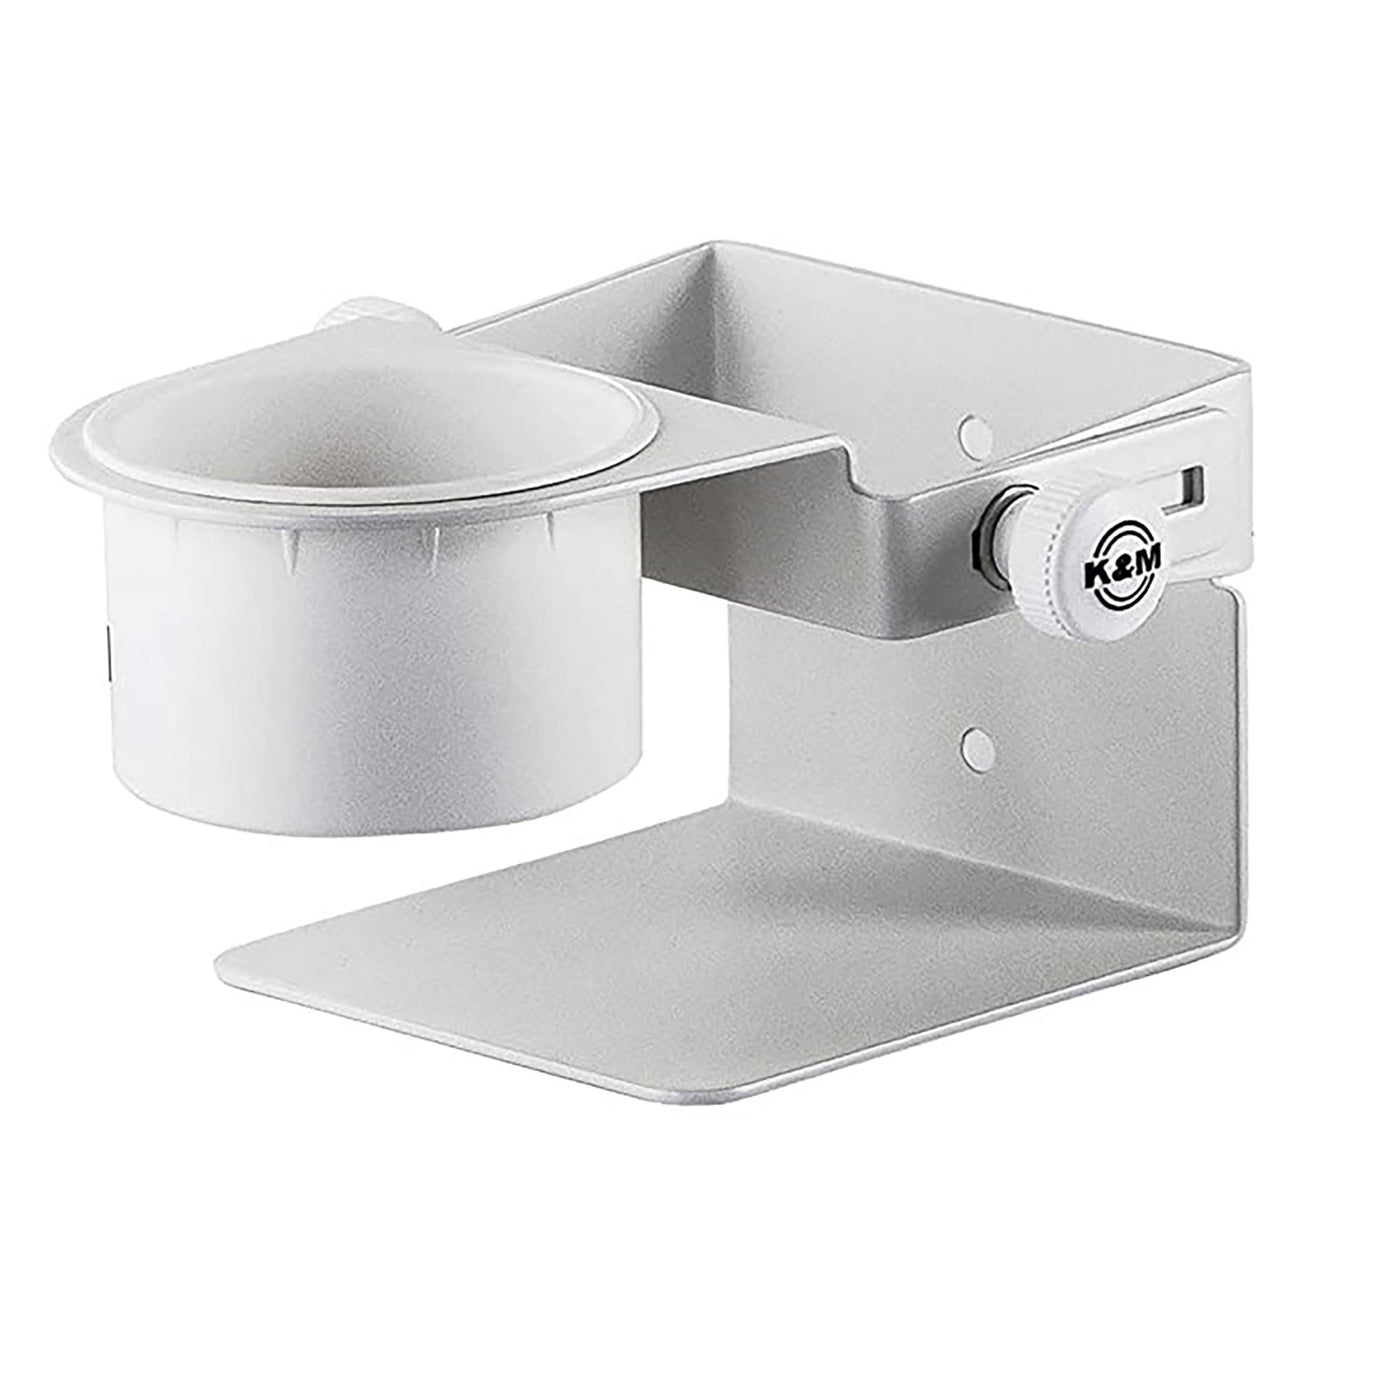 K&M Hand Sanitizer Holder Table/Desktop - White